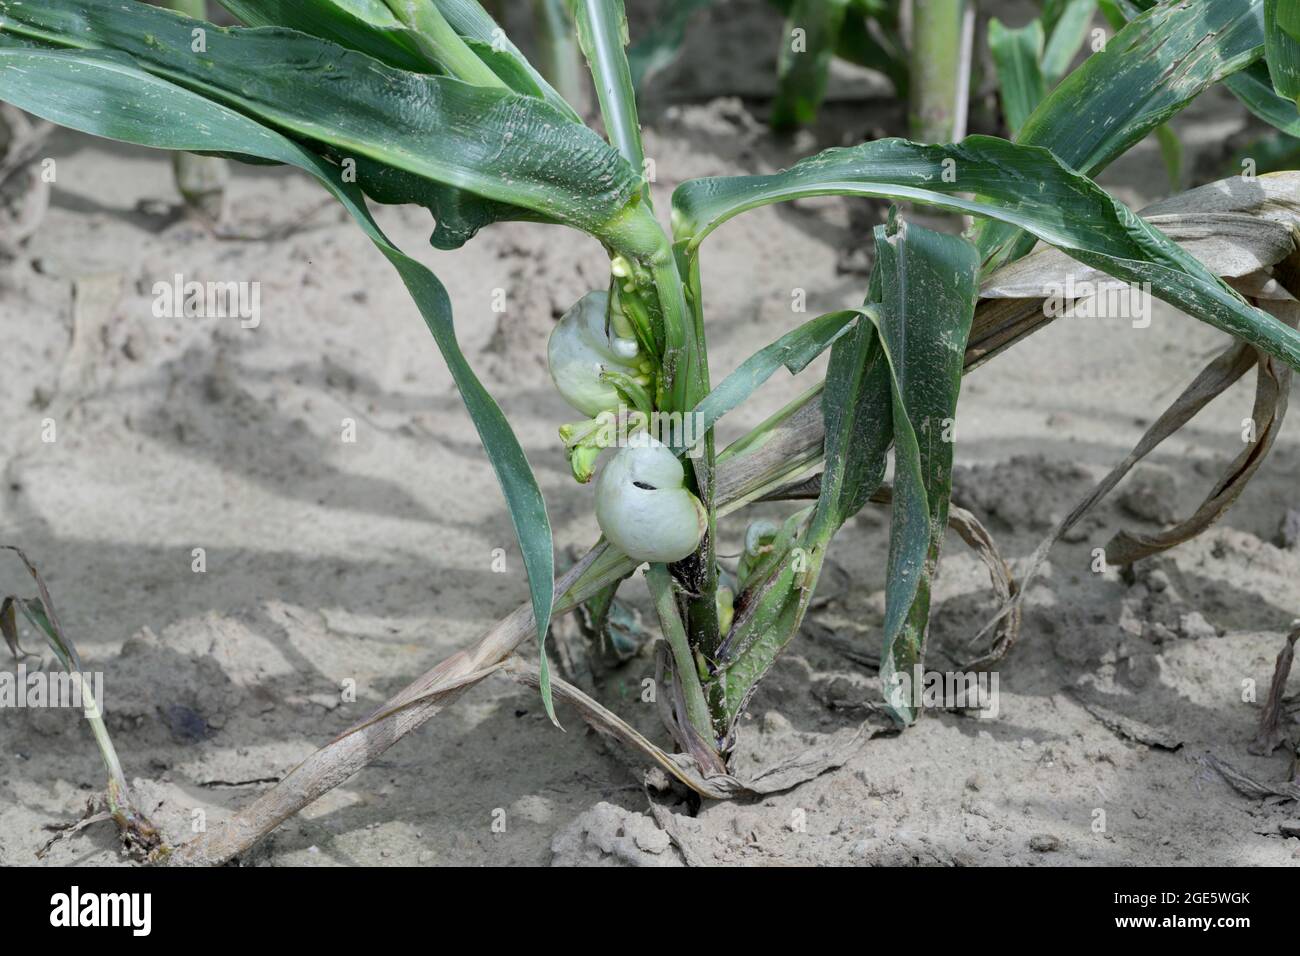 Maisschmierungen sind Pflanzenkrankheiten, die durch Ustilago maydis auf Mais verursacht werden Stockfoto